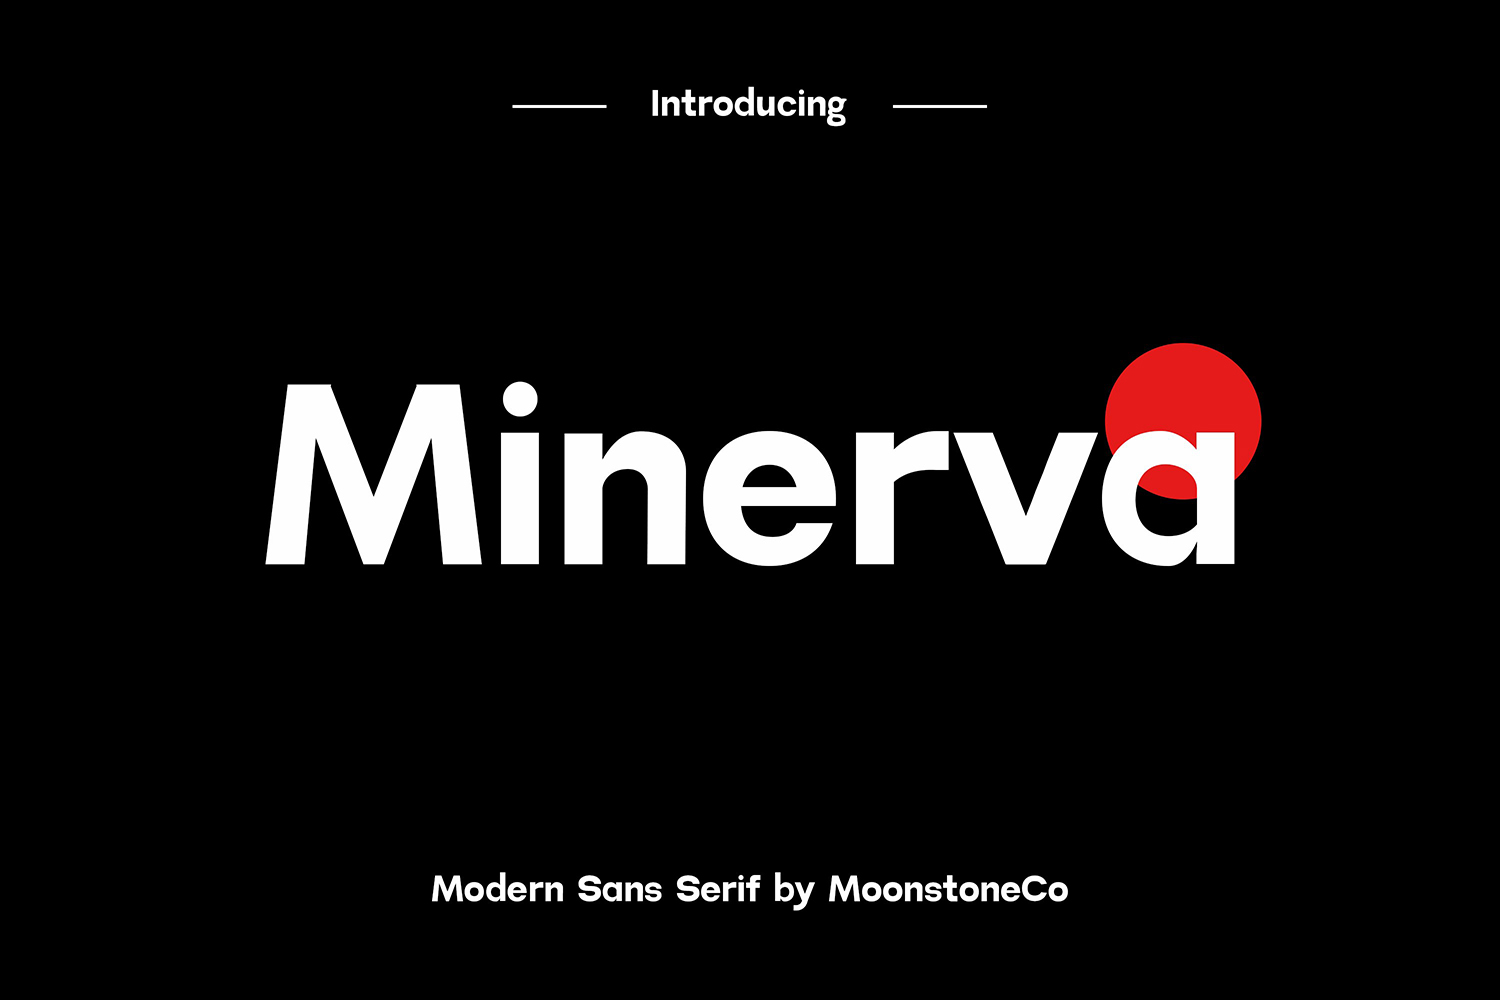 Minerva Free Font